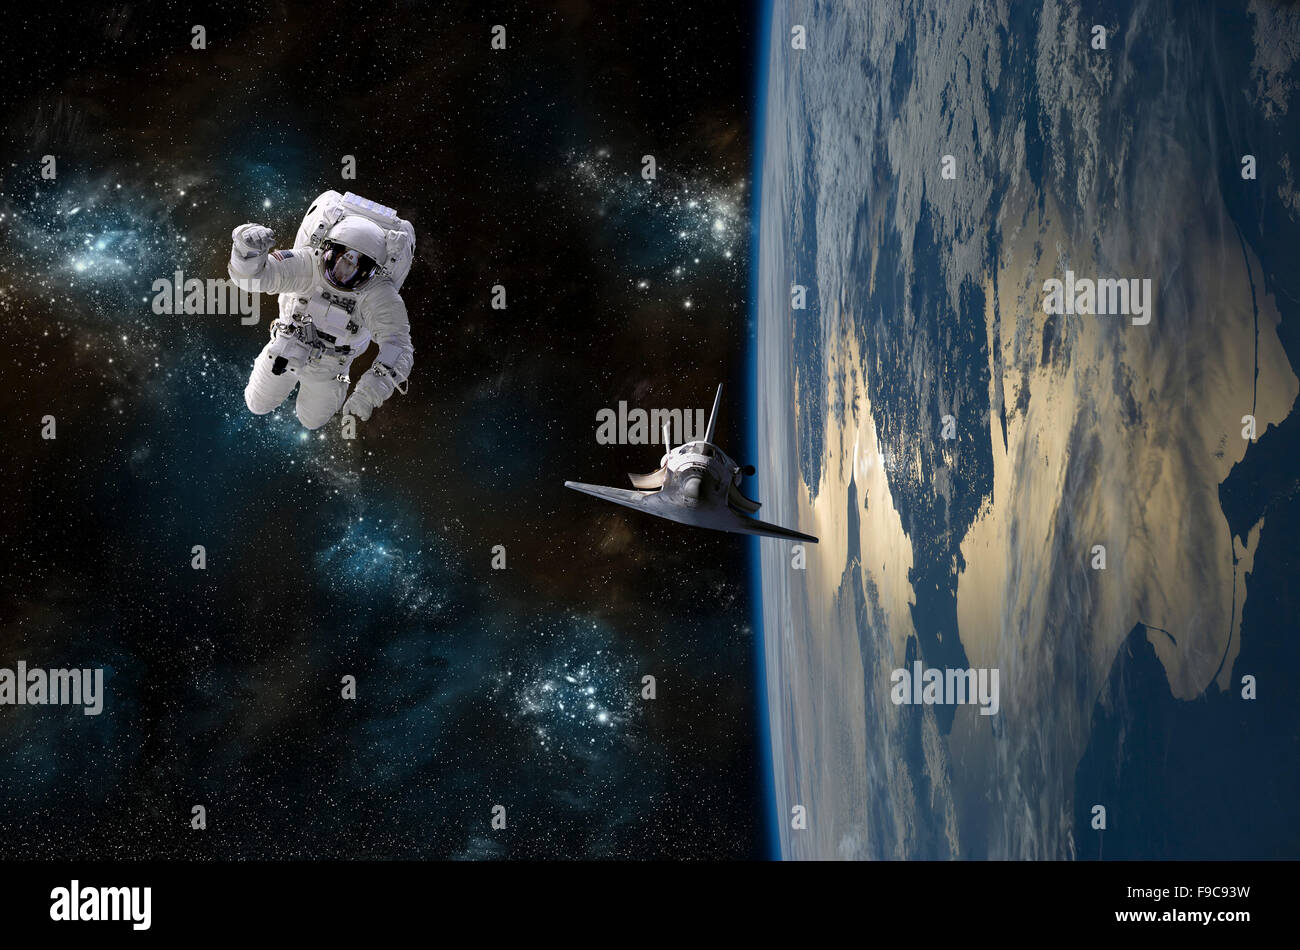 La dérive d'un astronaute dans l'espace est secouru par une navette spatiale en orbite autour de la Terre. Banque D'Images